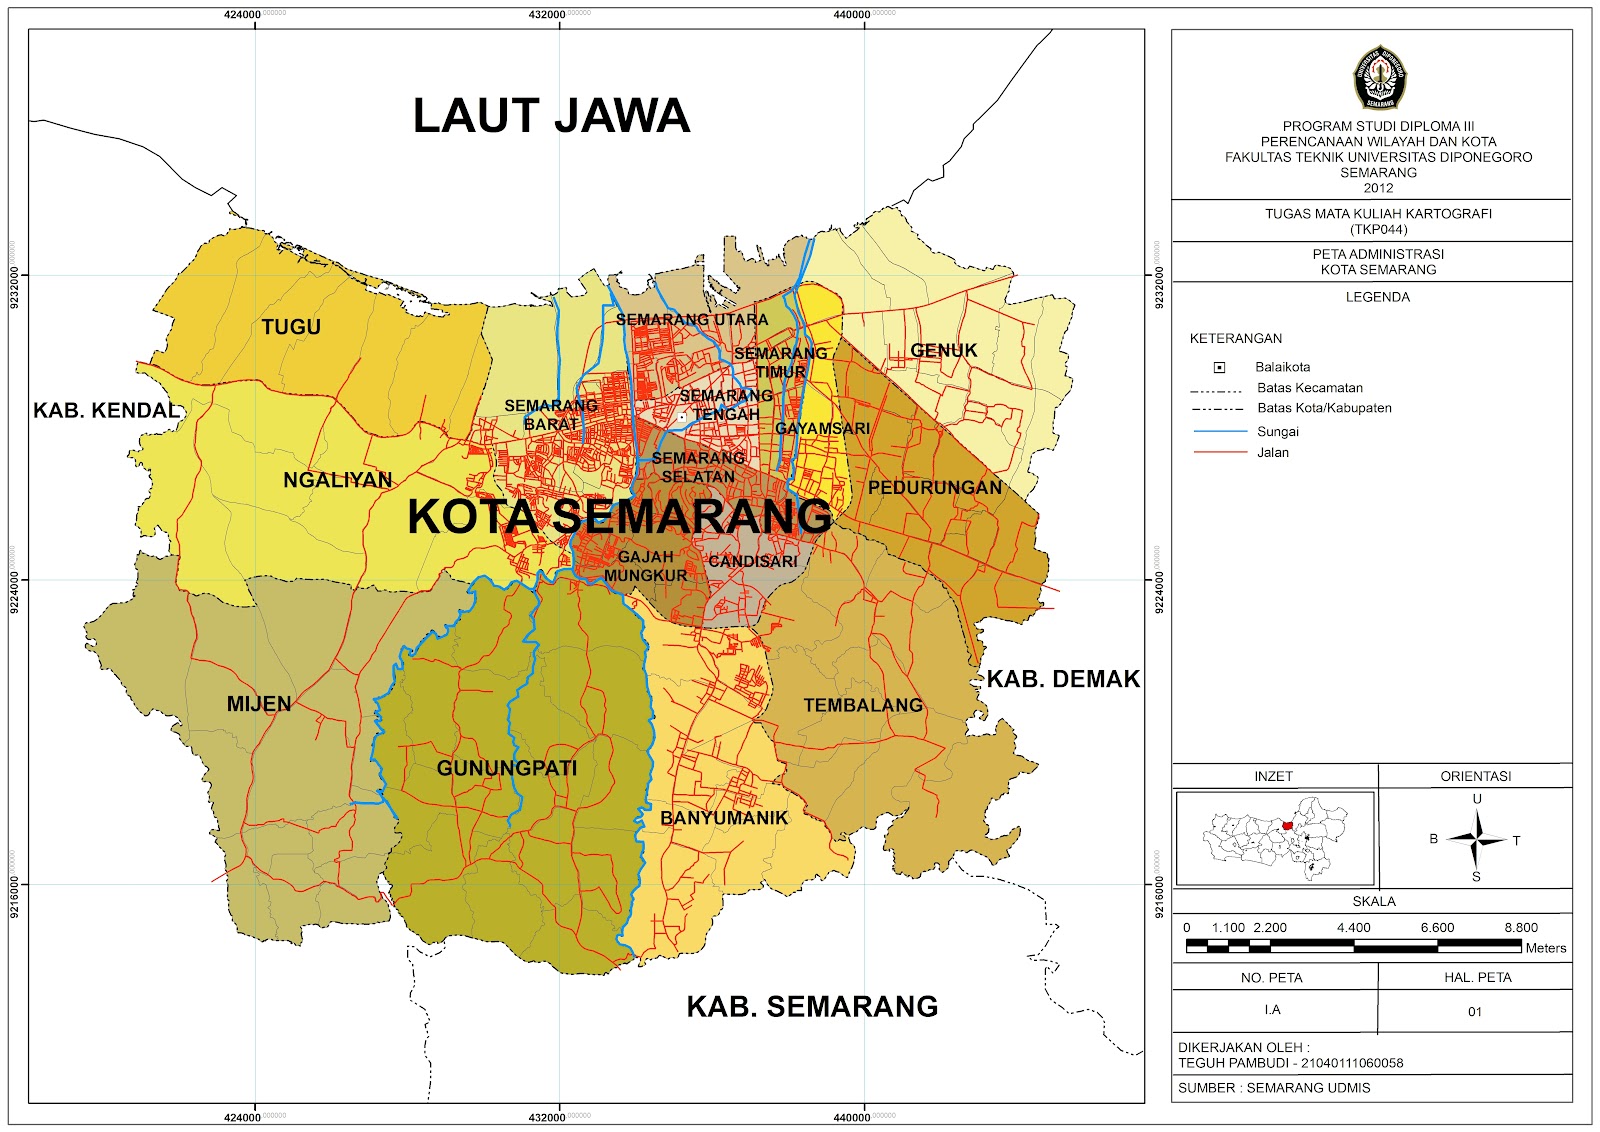 Peta Administrasi Kota Semarang Pamboedi File's